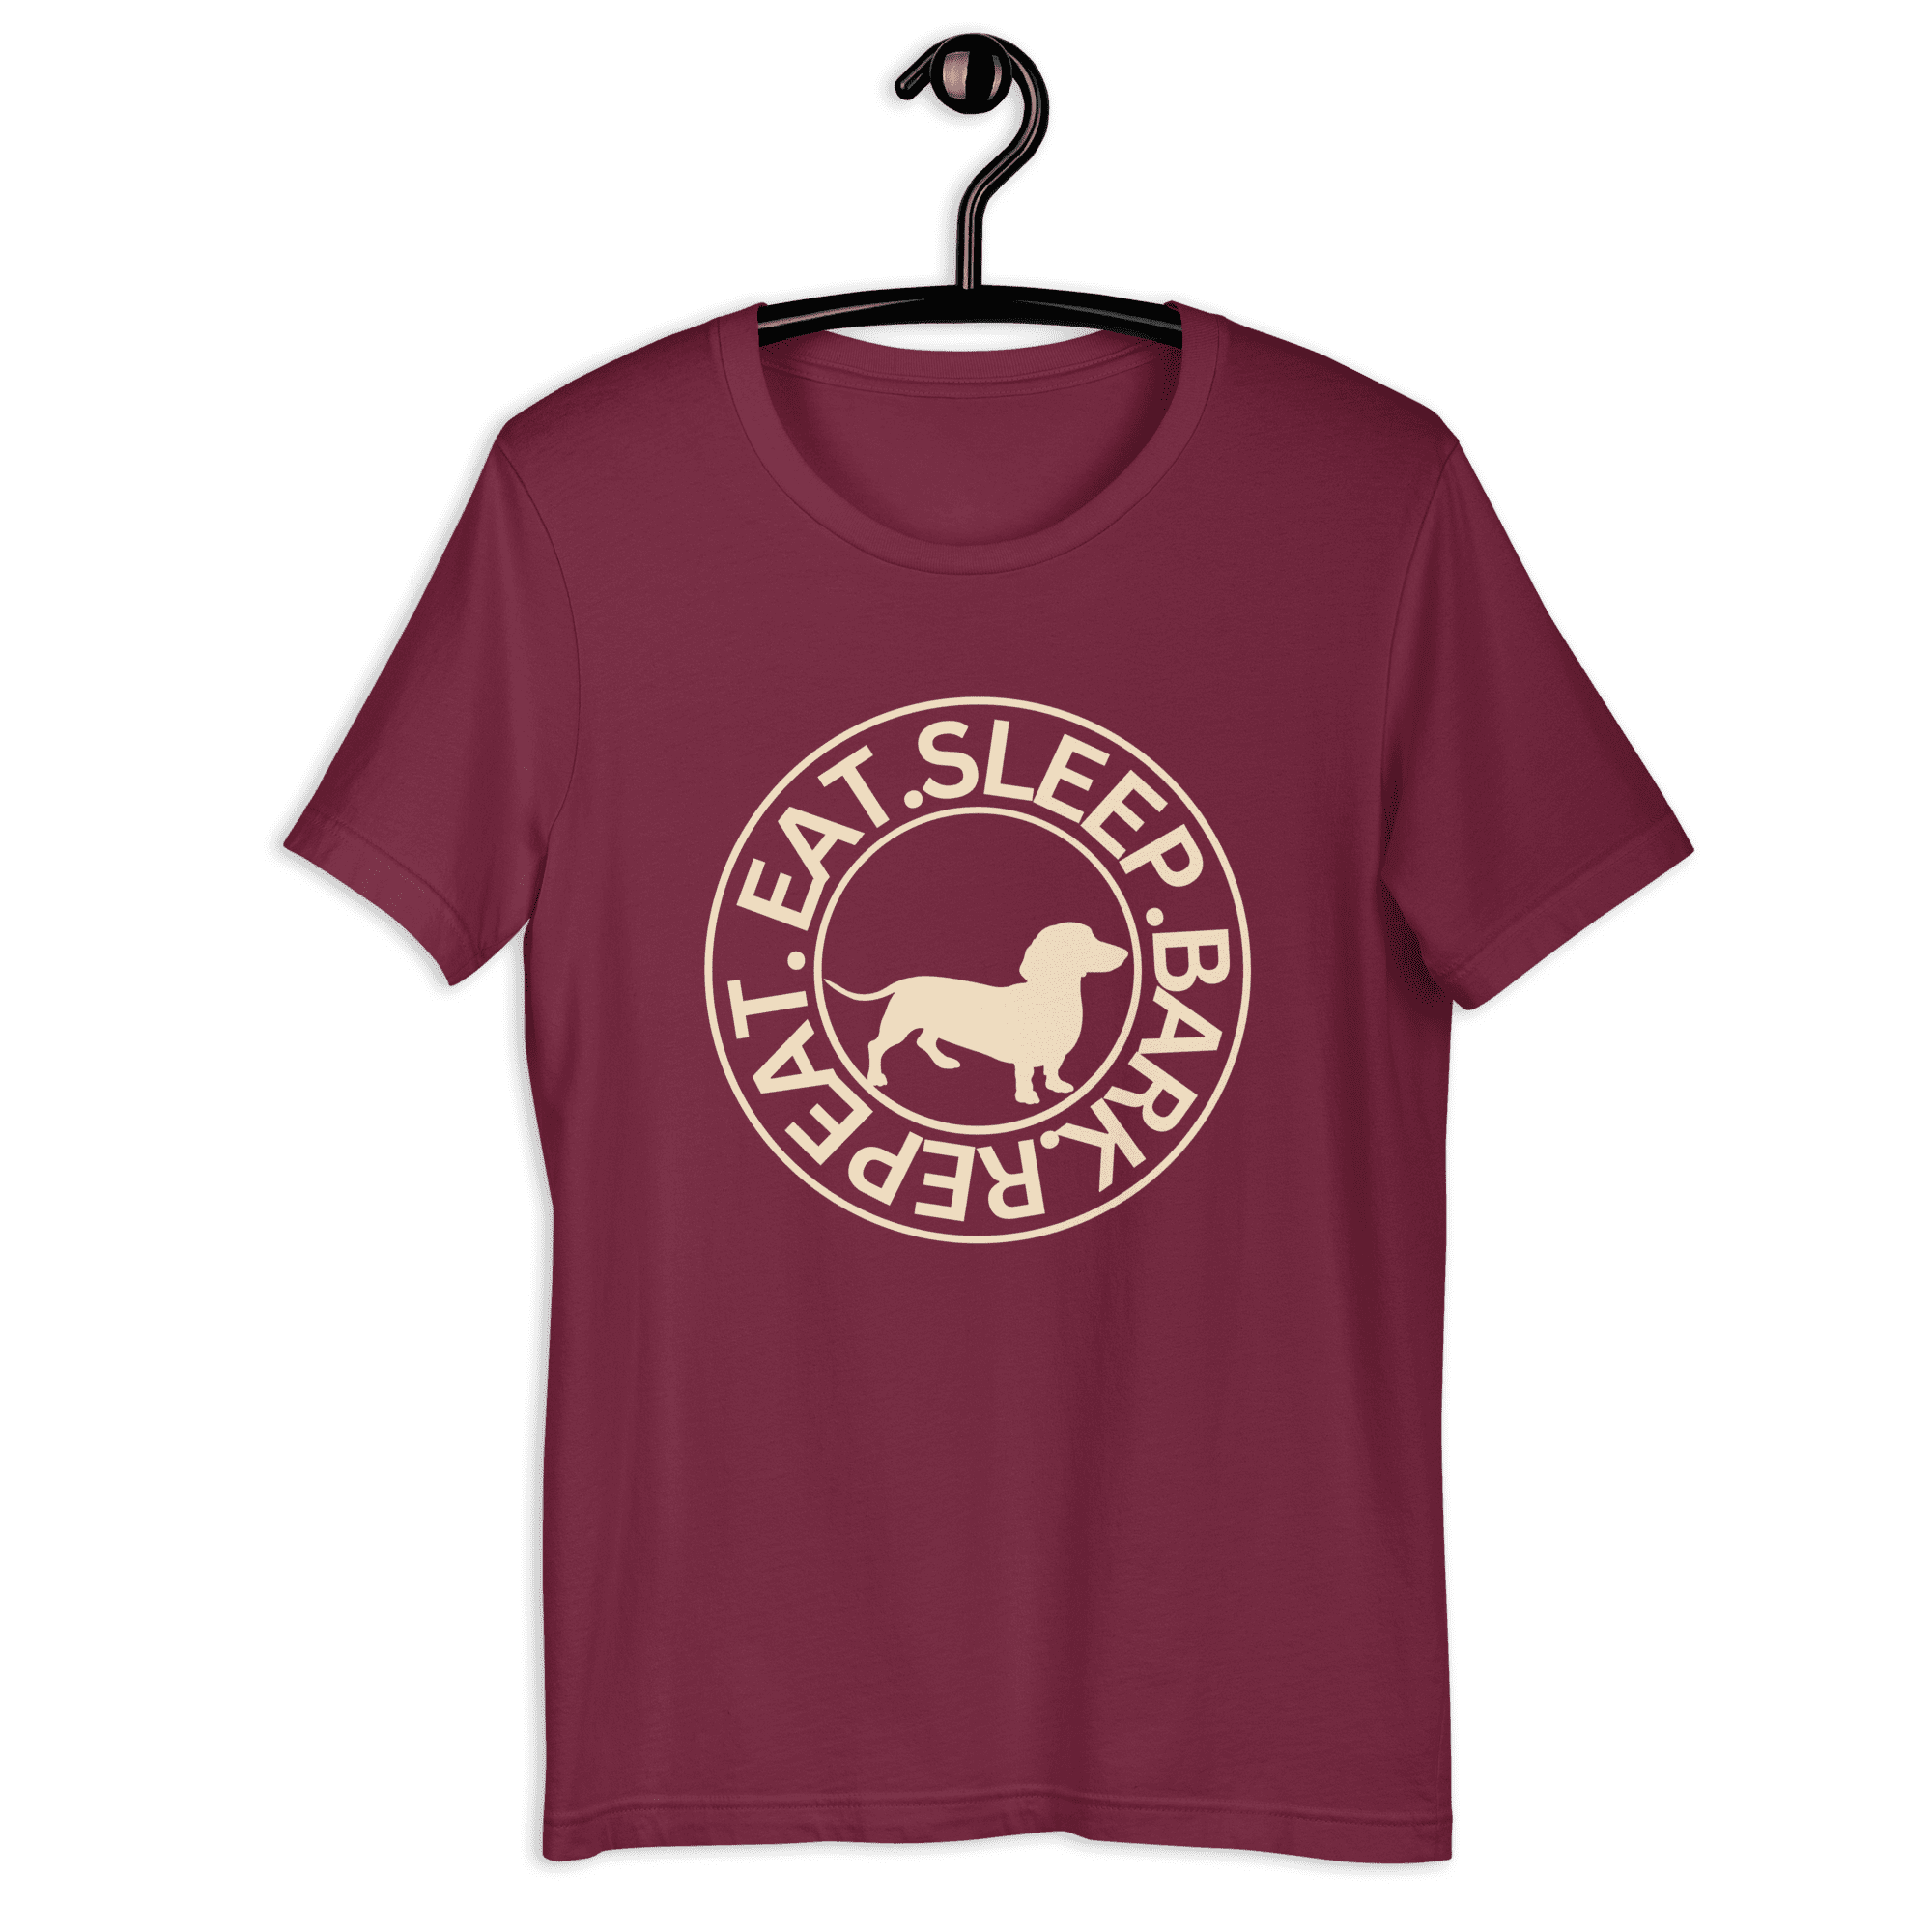 Eat Sleep Bark Repeat Transylvanian Hound (Erdélyi Kopó) Unisex T-Shirt. Maroon